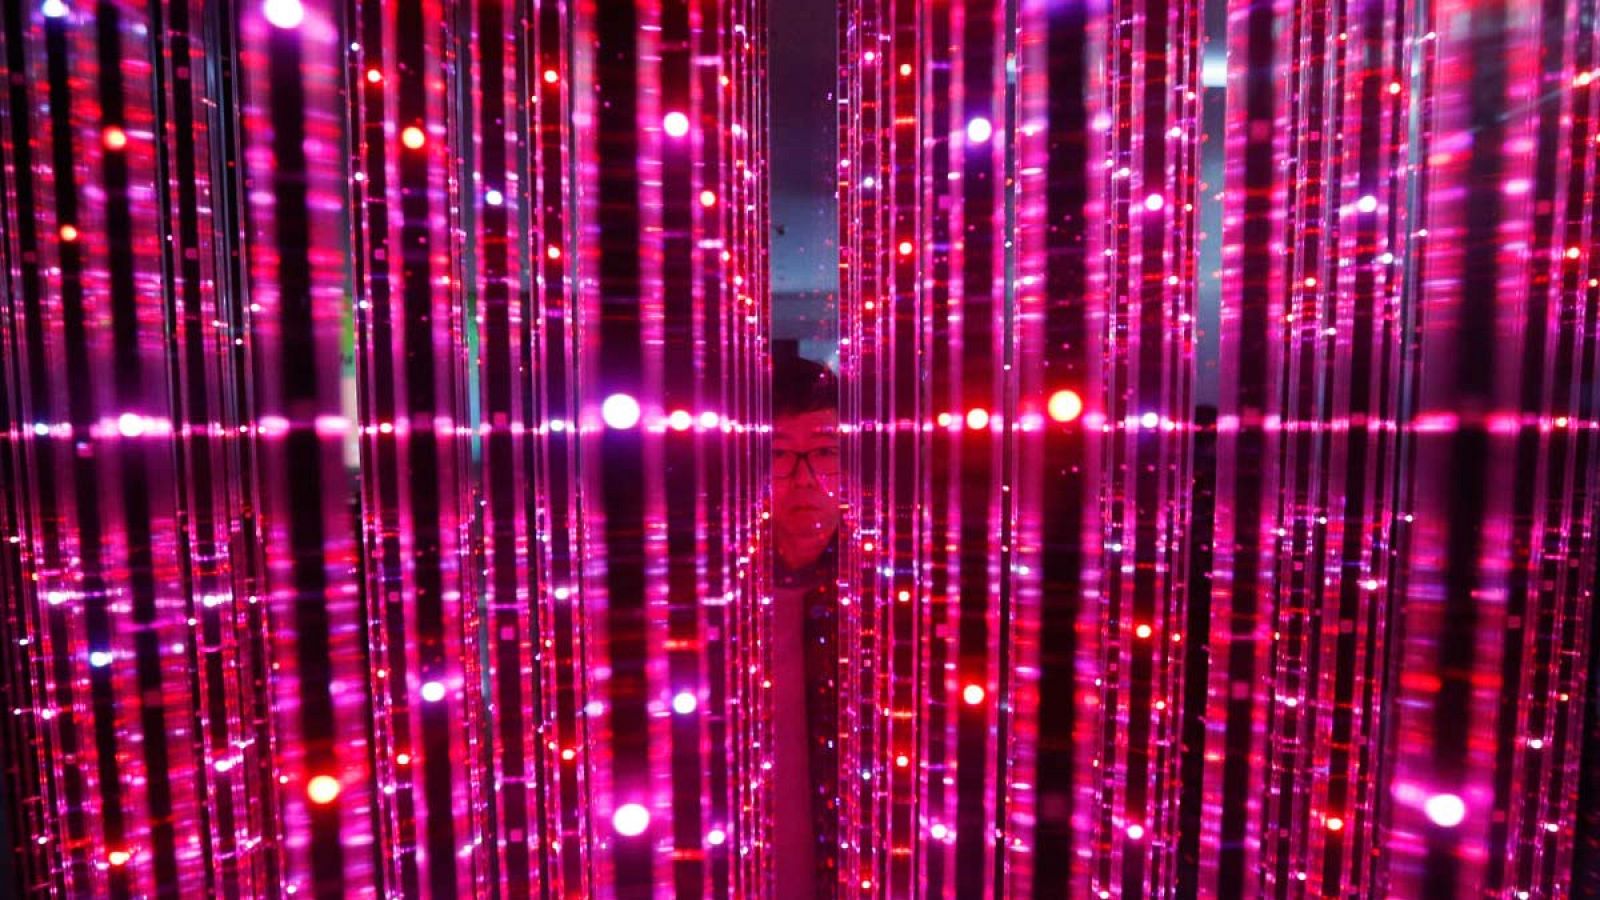 Un hombre observa un tambor de luces LED en el salón de electrónica de Seúl